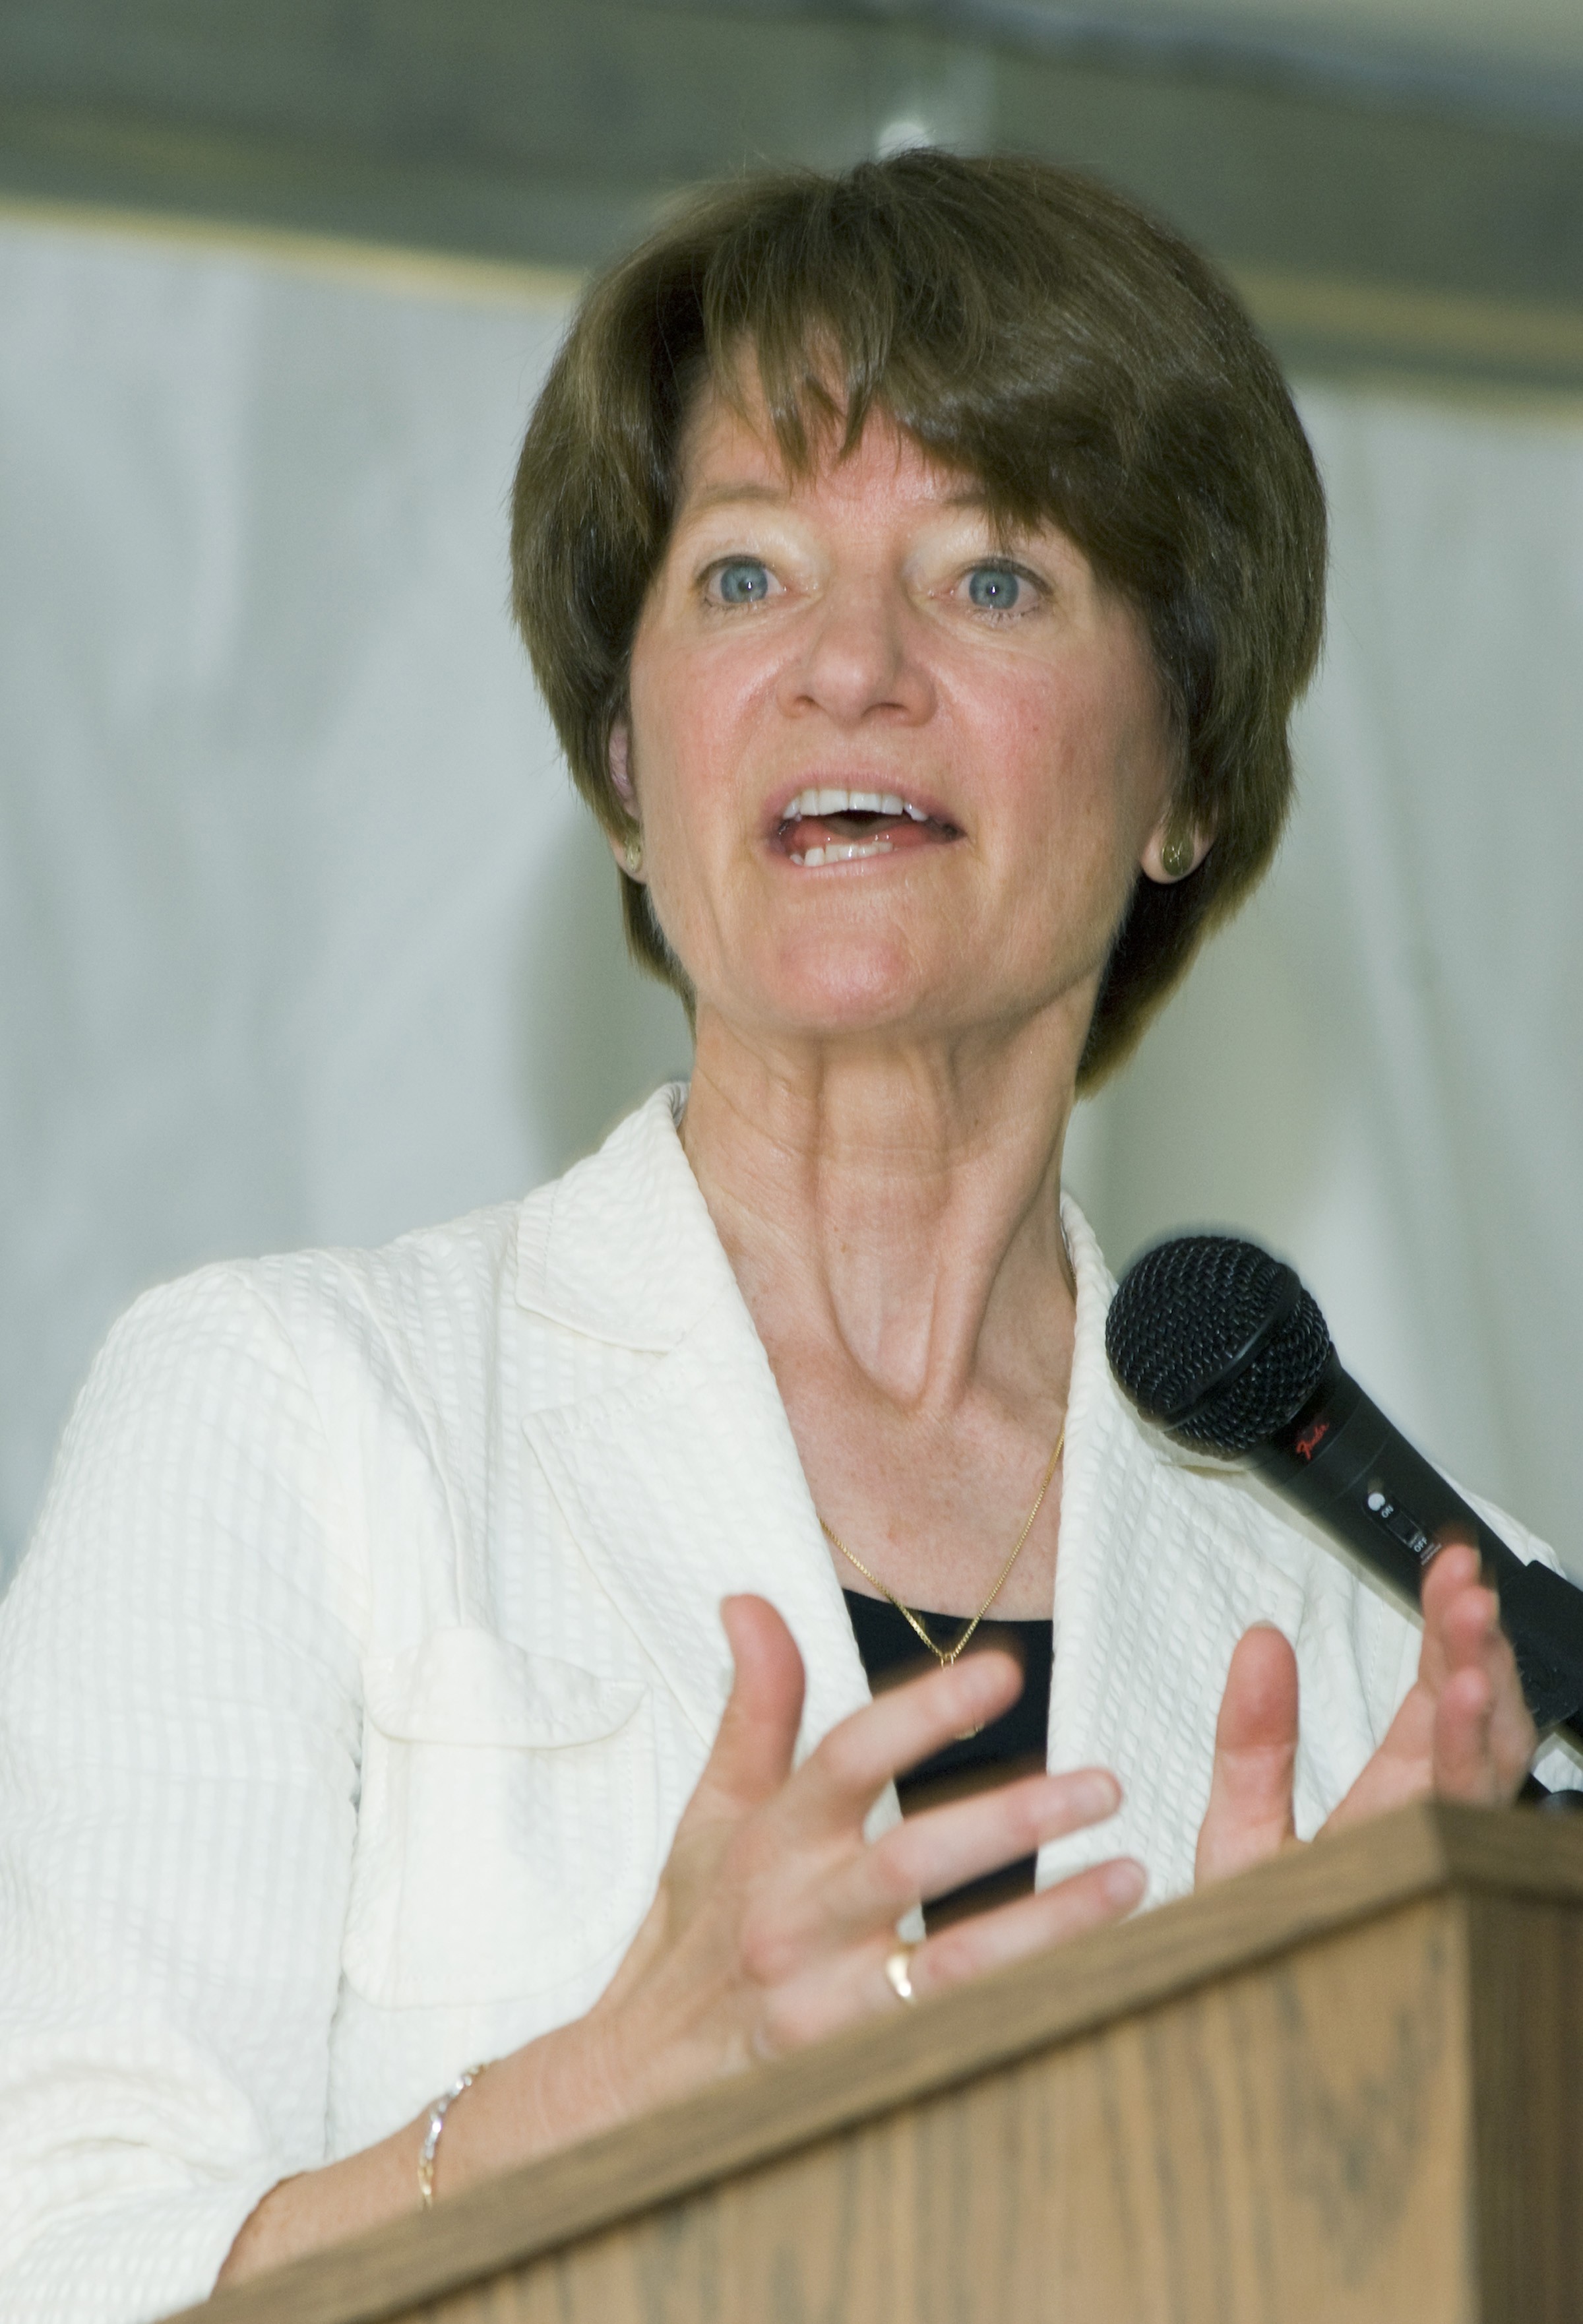 Sally Ride discursando em evento no Centro de Voo Espacial Goddard, da Nasa, em 2008 (Foto: NASA Goddard Space Flight Center)